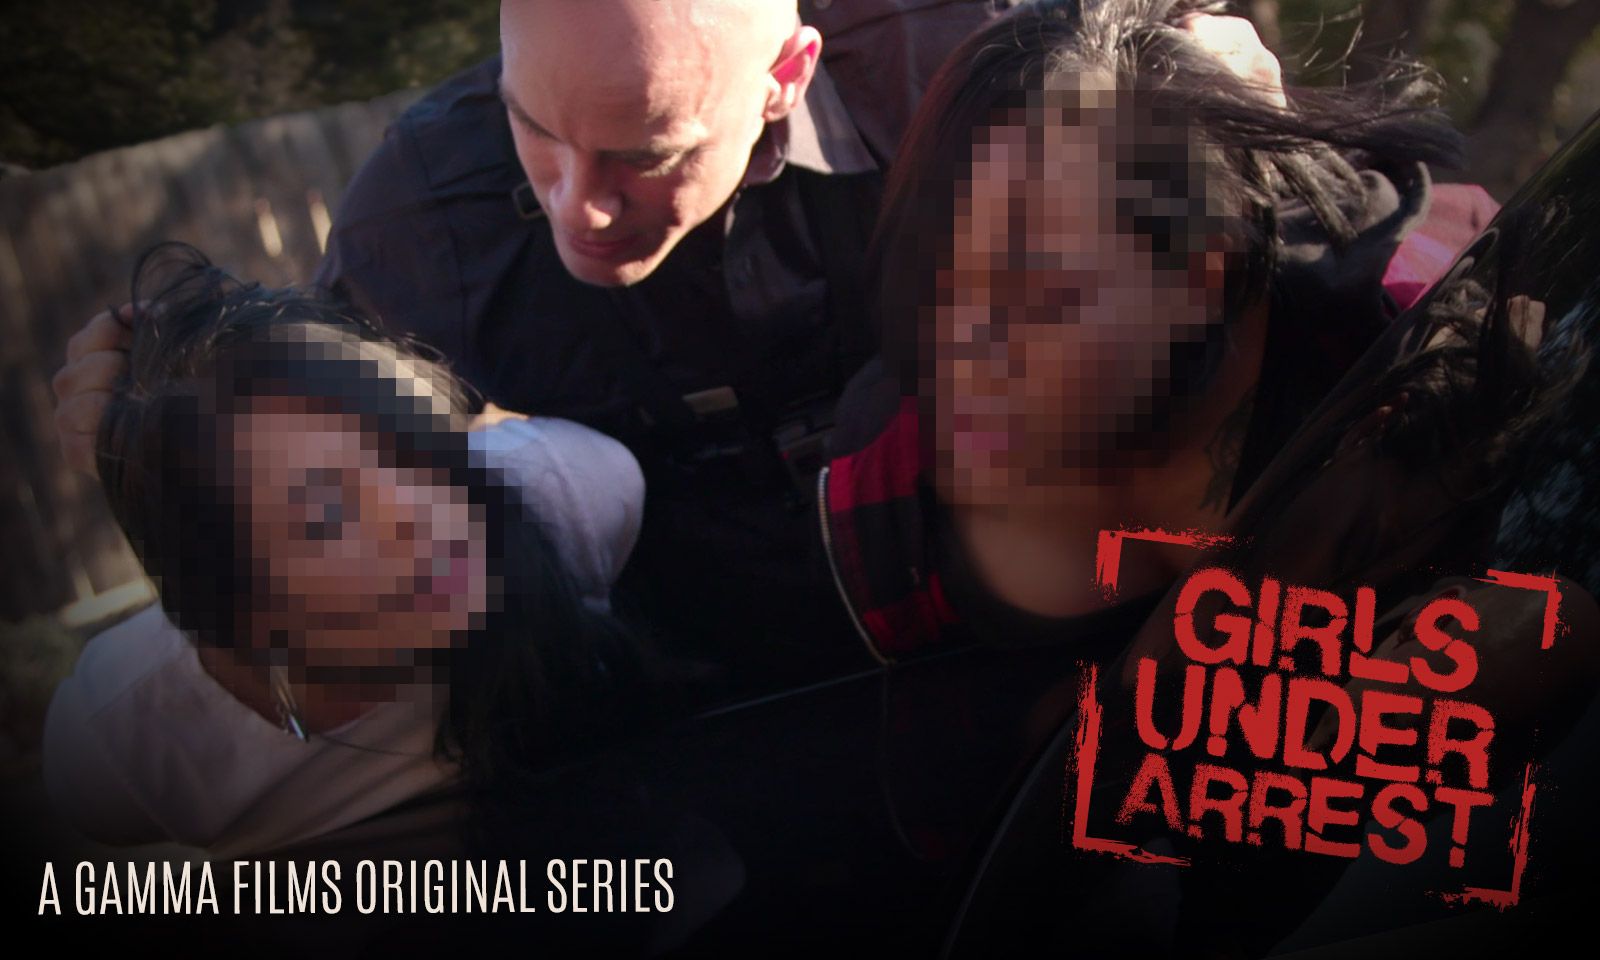 Gamma Films Puts 'Girls Under Arrest' in New Series